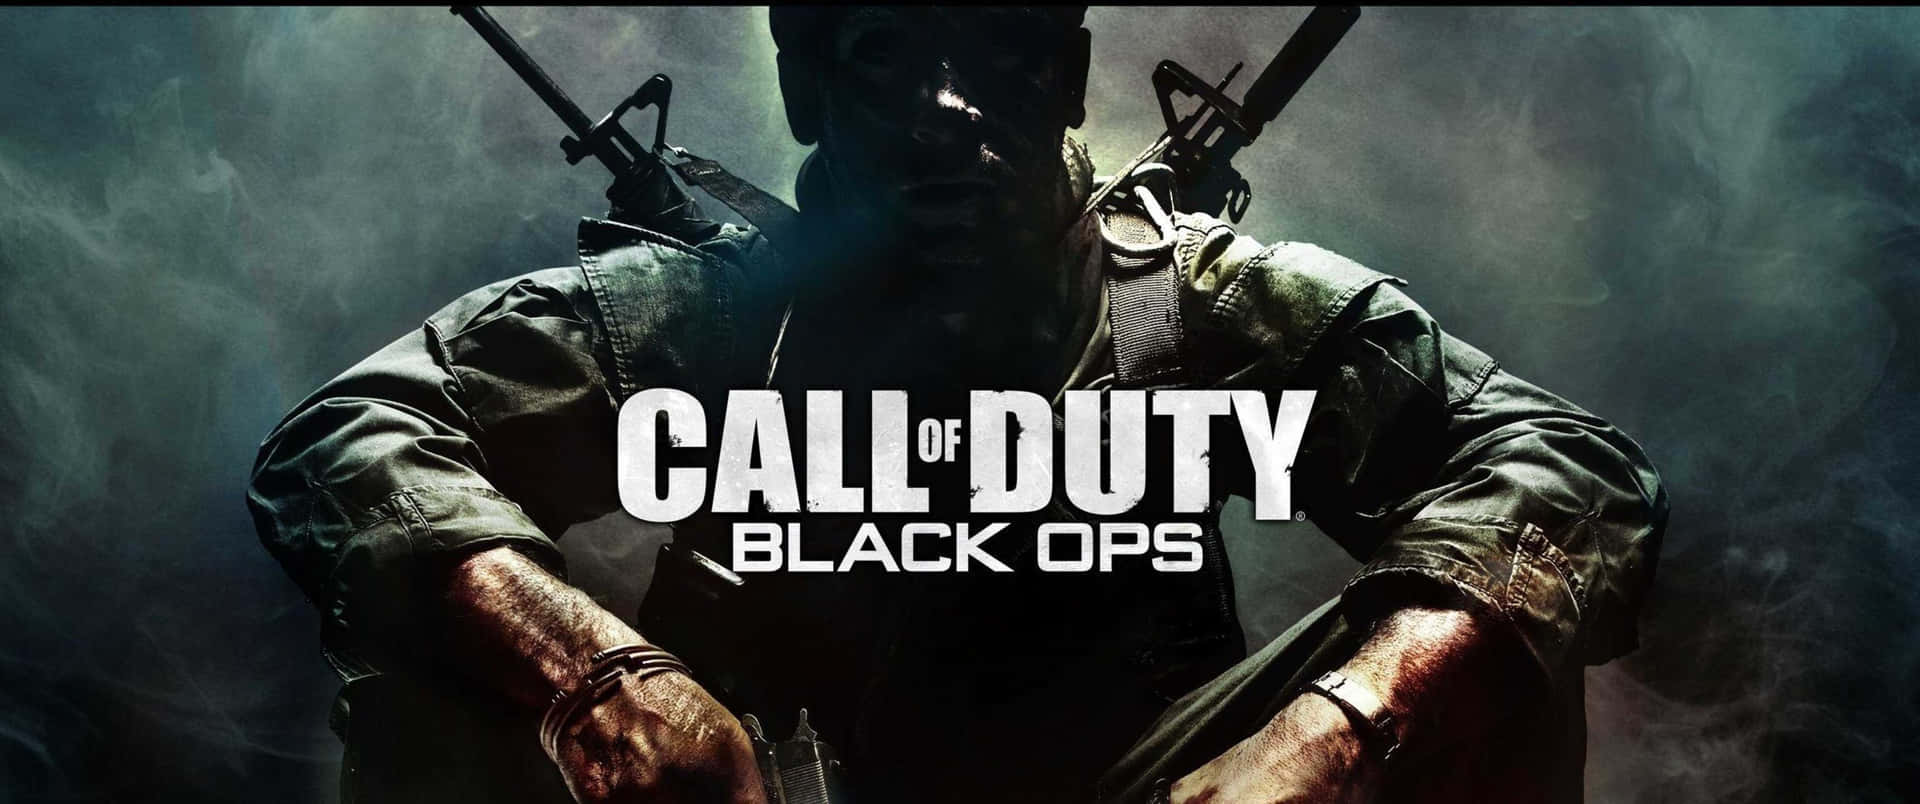 Callof Duty Black Ops En Pc